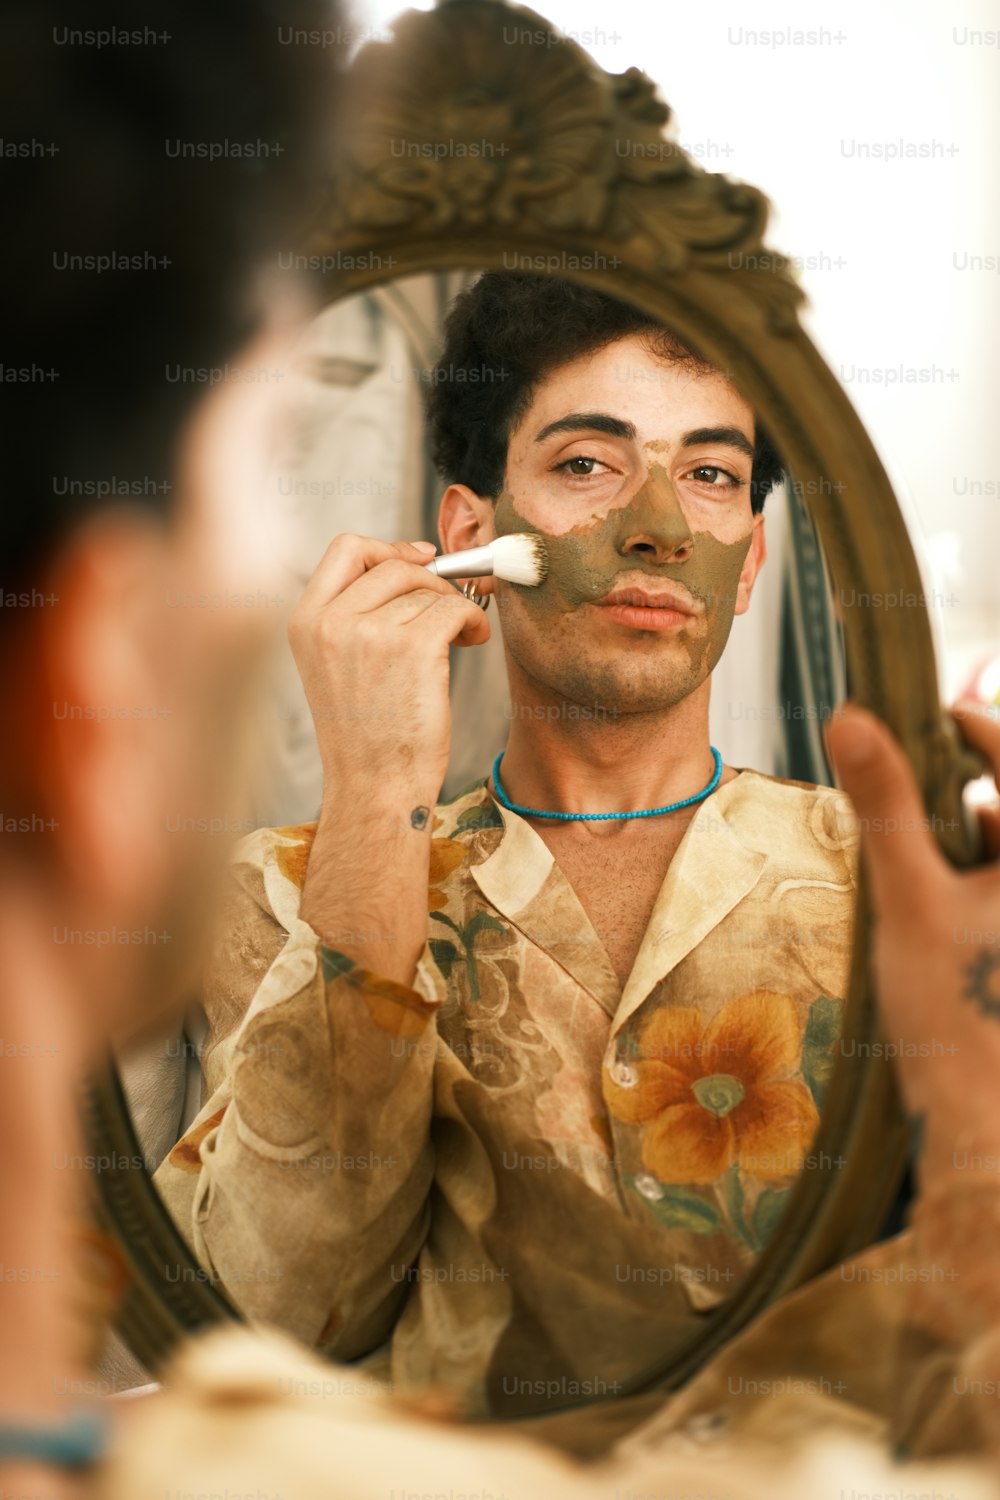 Un hombre afeitándose la cara frente a un espejo